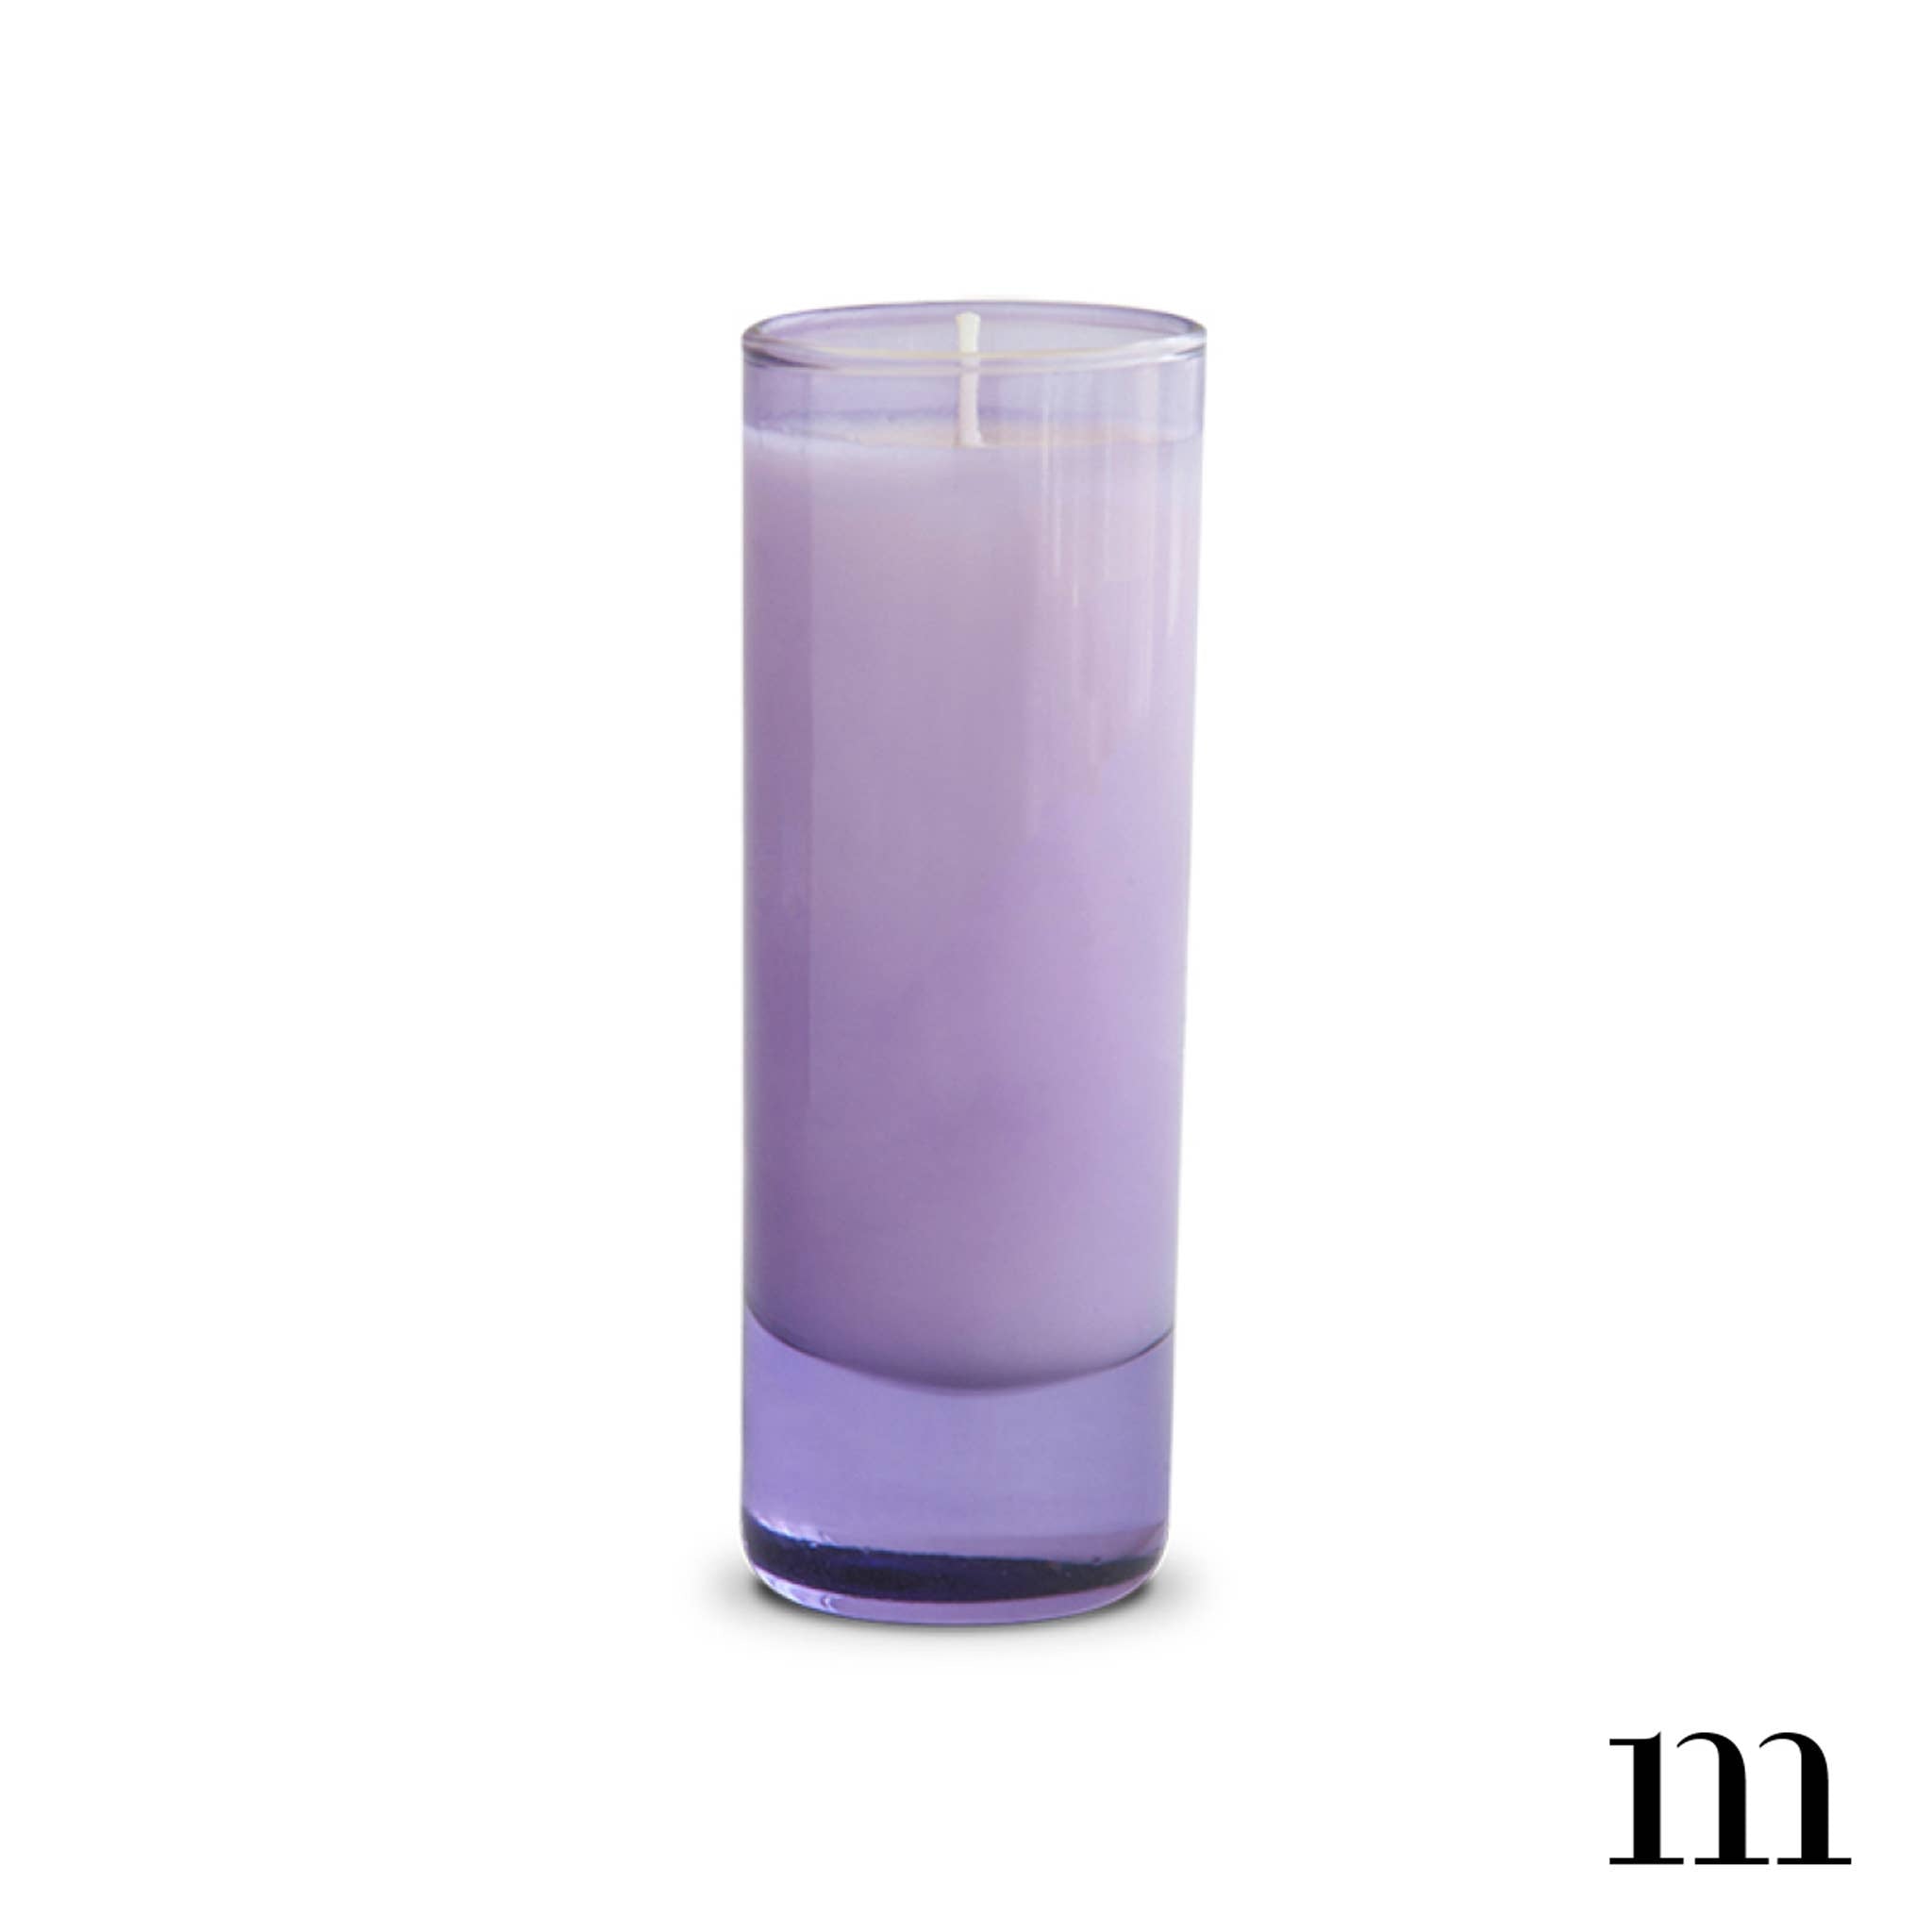 2 oz Votive Candle, Lavender